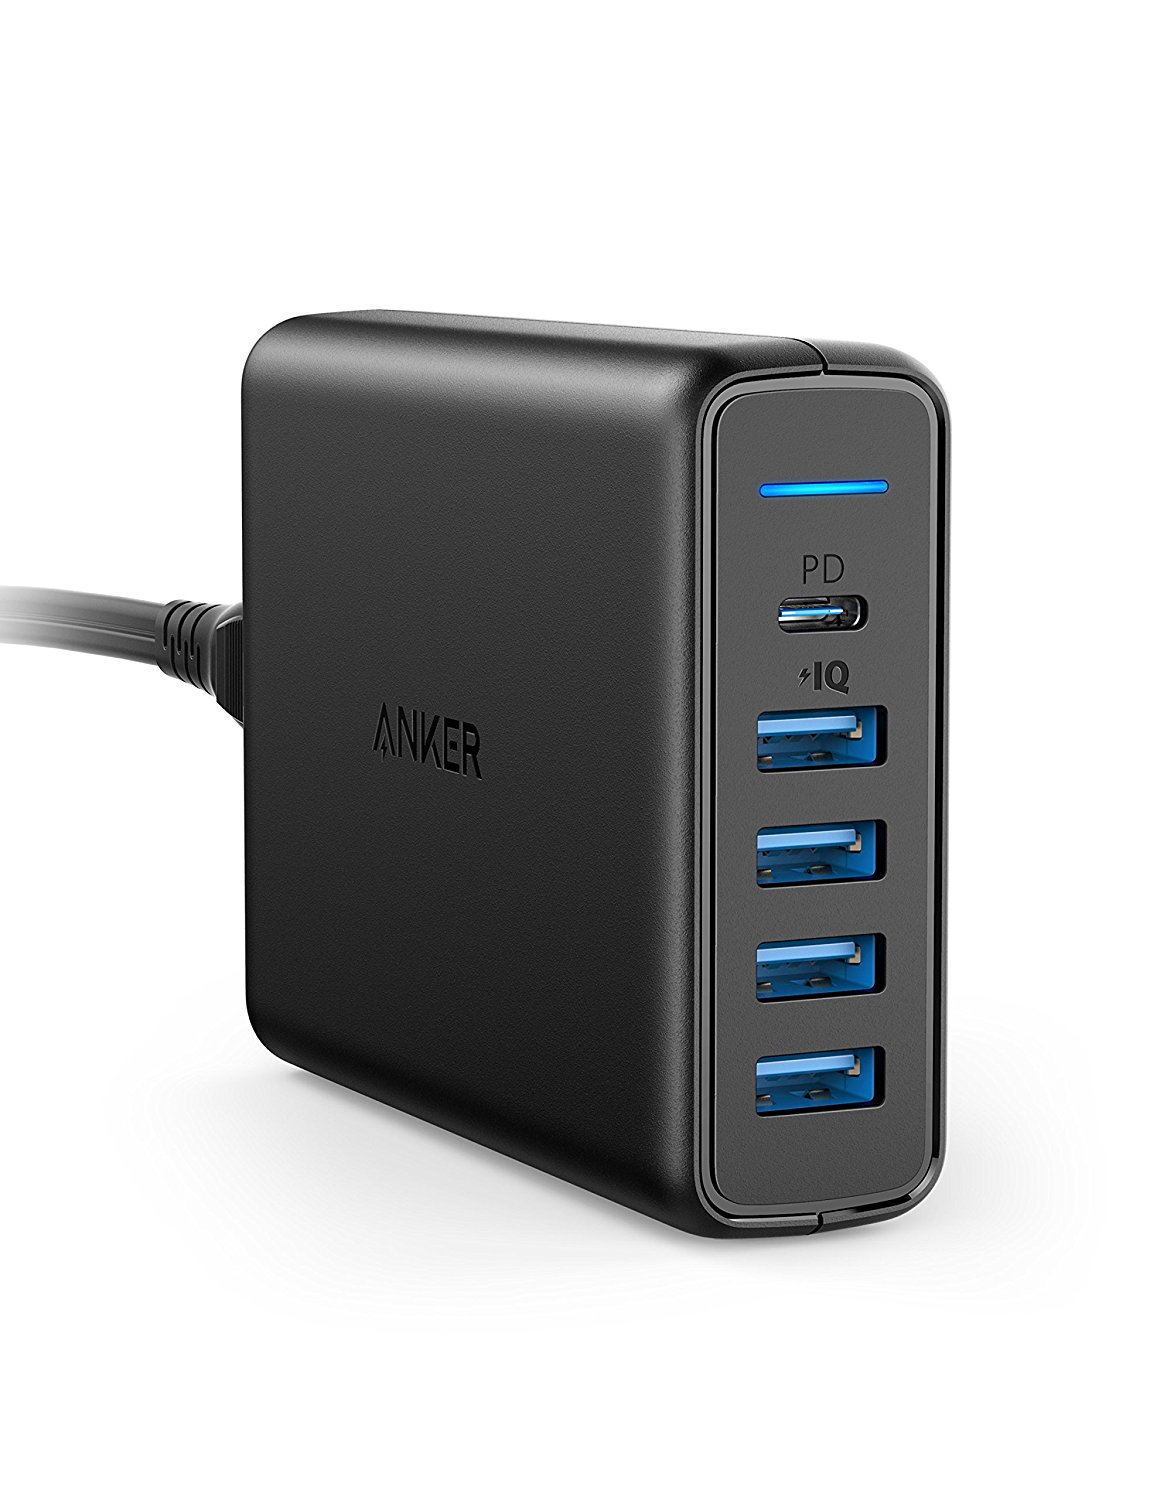 Anker PowerPort 5-Port USB C Ladegerät 60W Wandladegerät, 1-Port mit Power Delivery für Apple MacBook, Nexus 5X / 6P und 4 PowerIQ Ports für iPhone 8 X 8Plus, iPad, Samsung und weitere Geräte